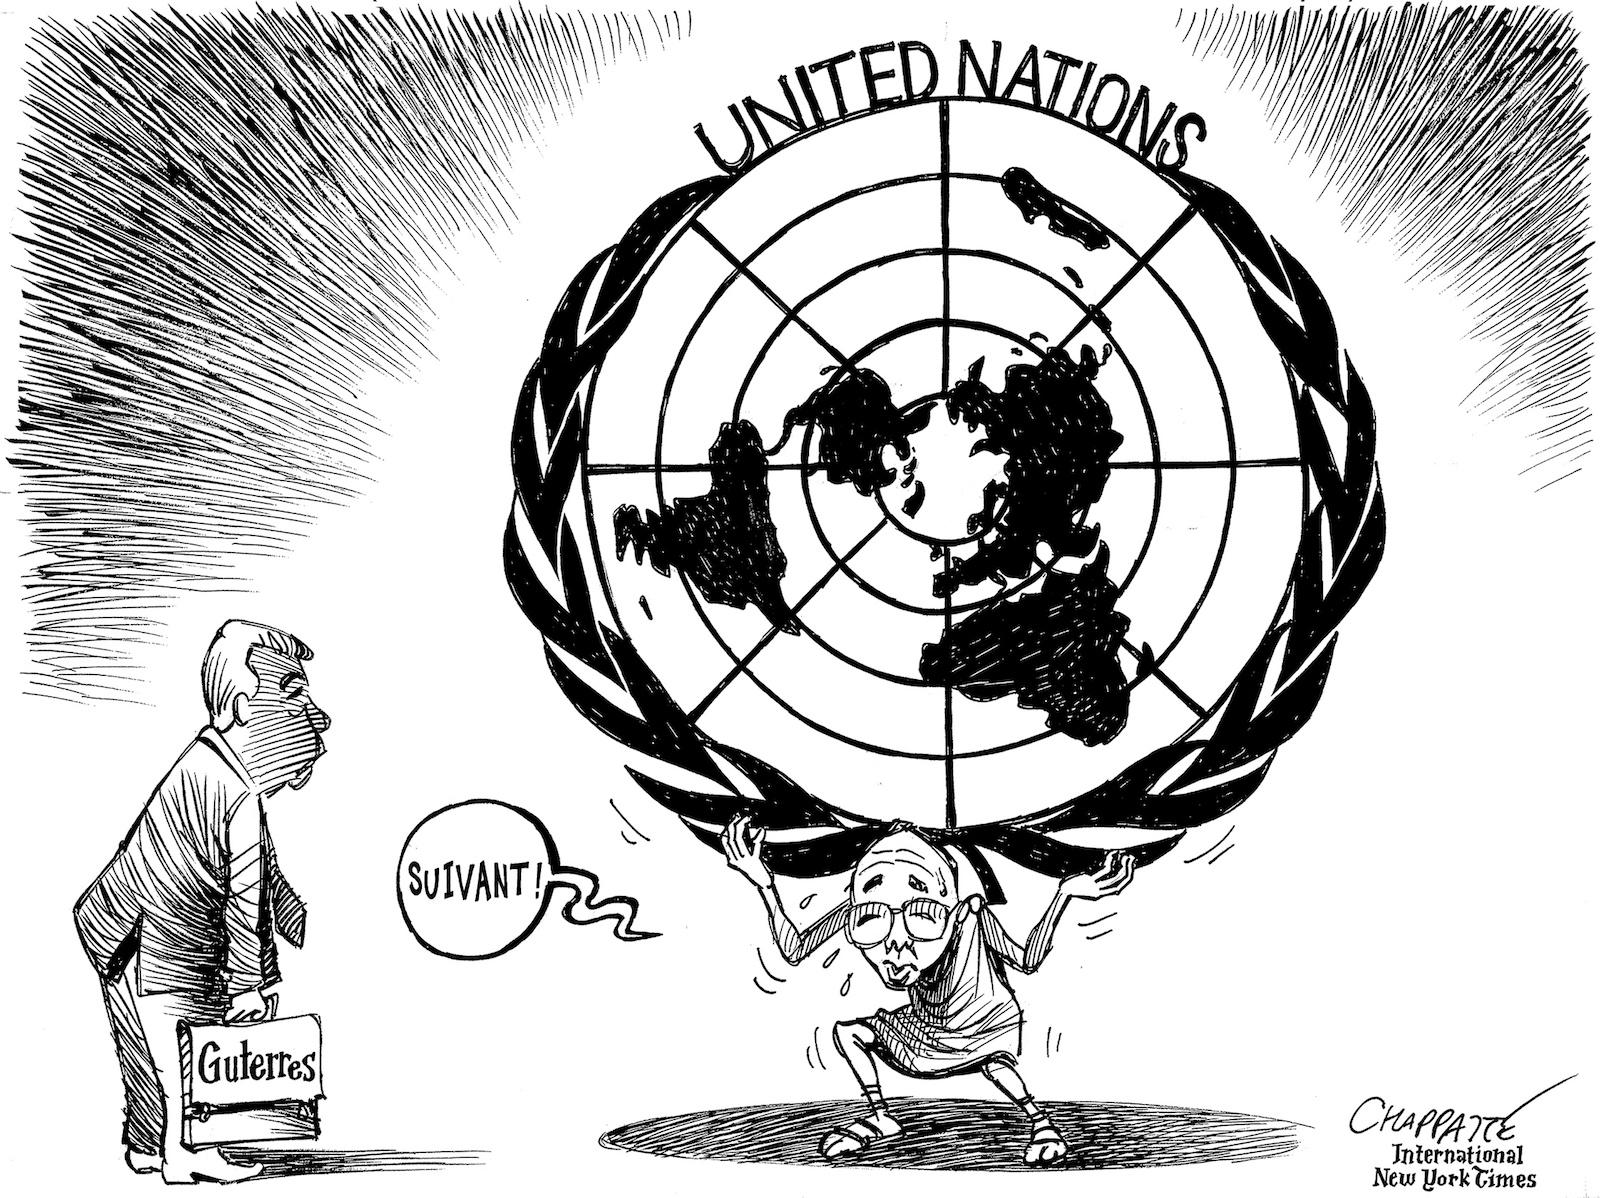 Un nouveau chef à l'ONU